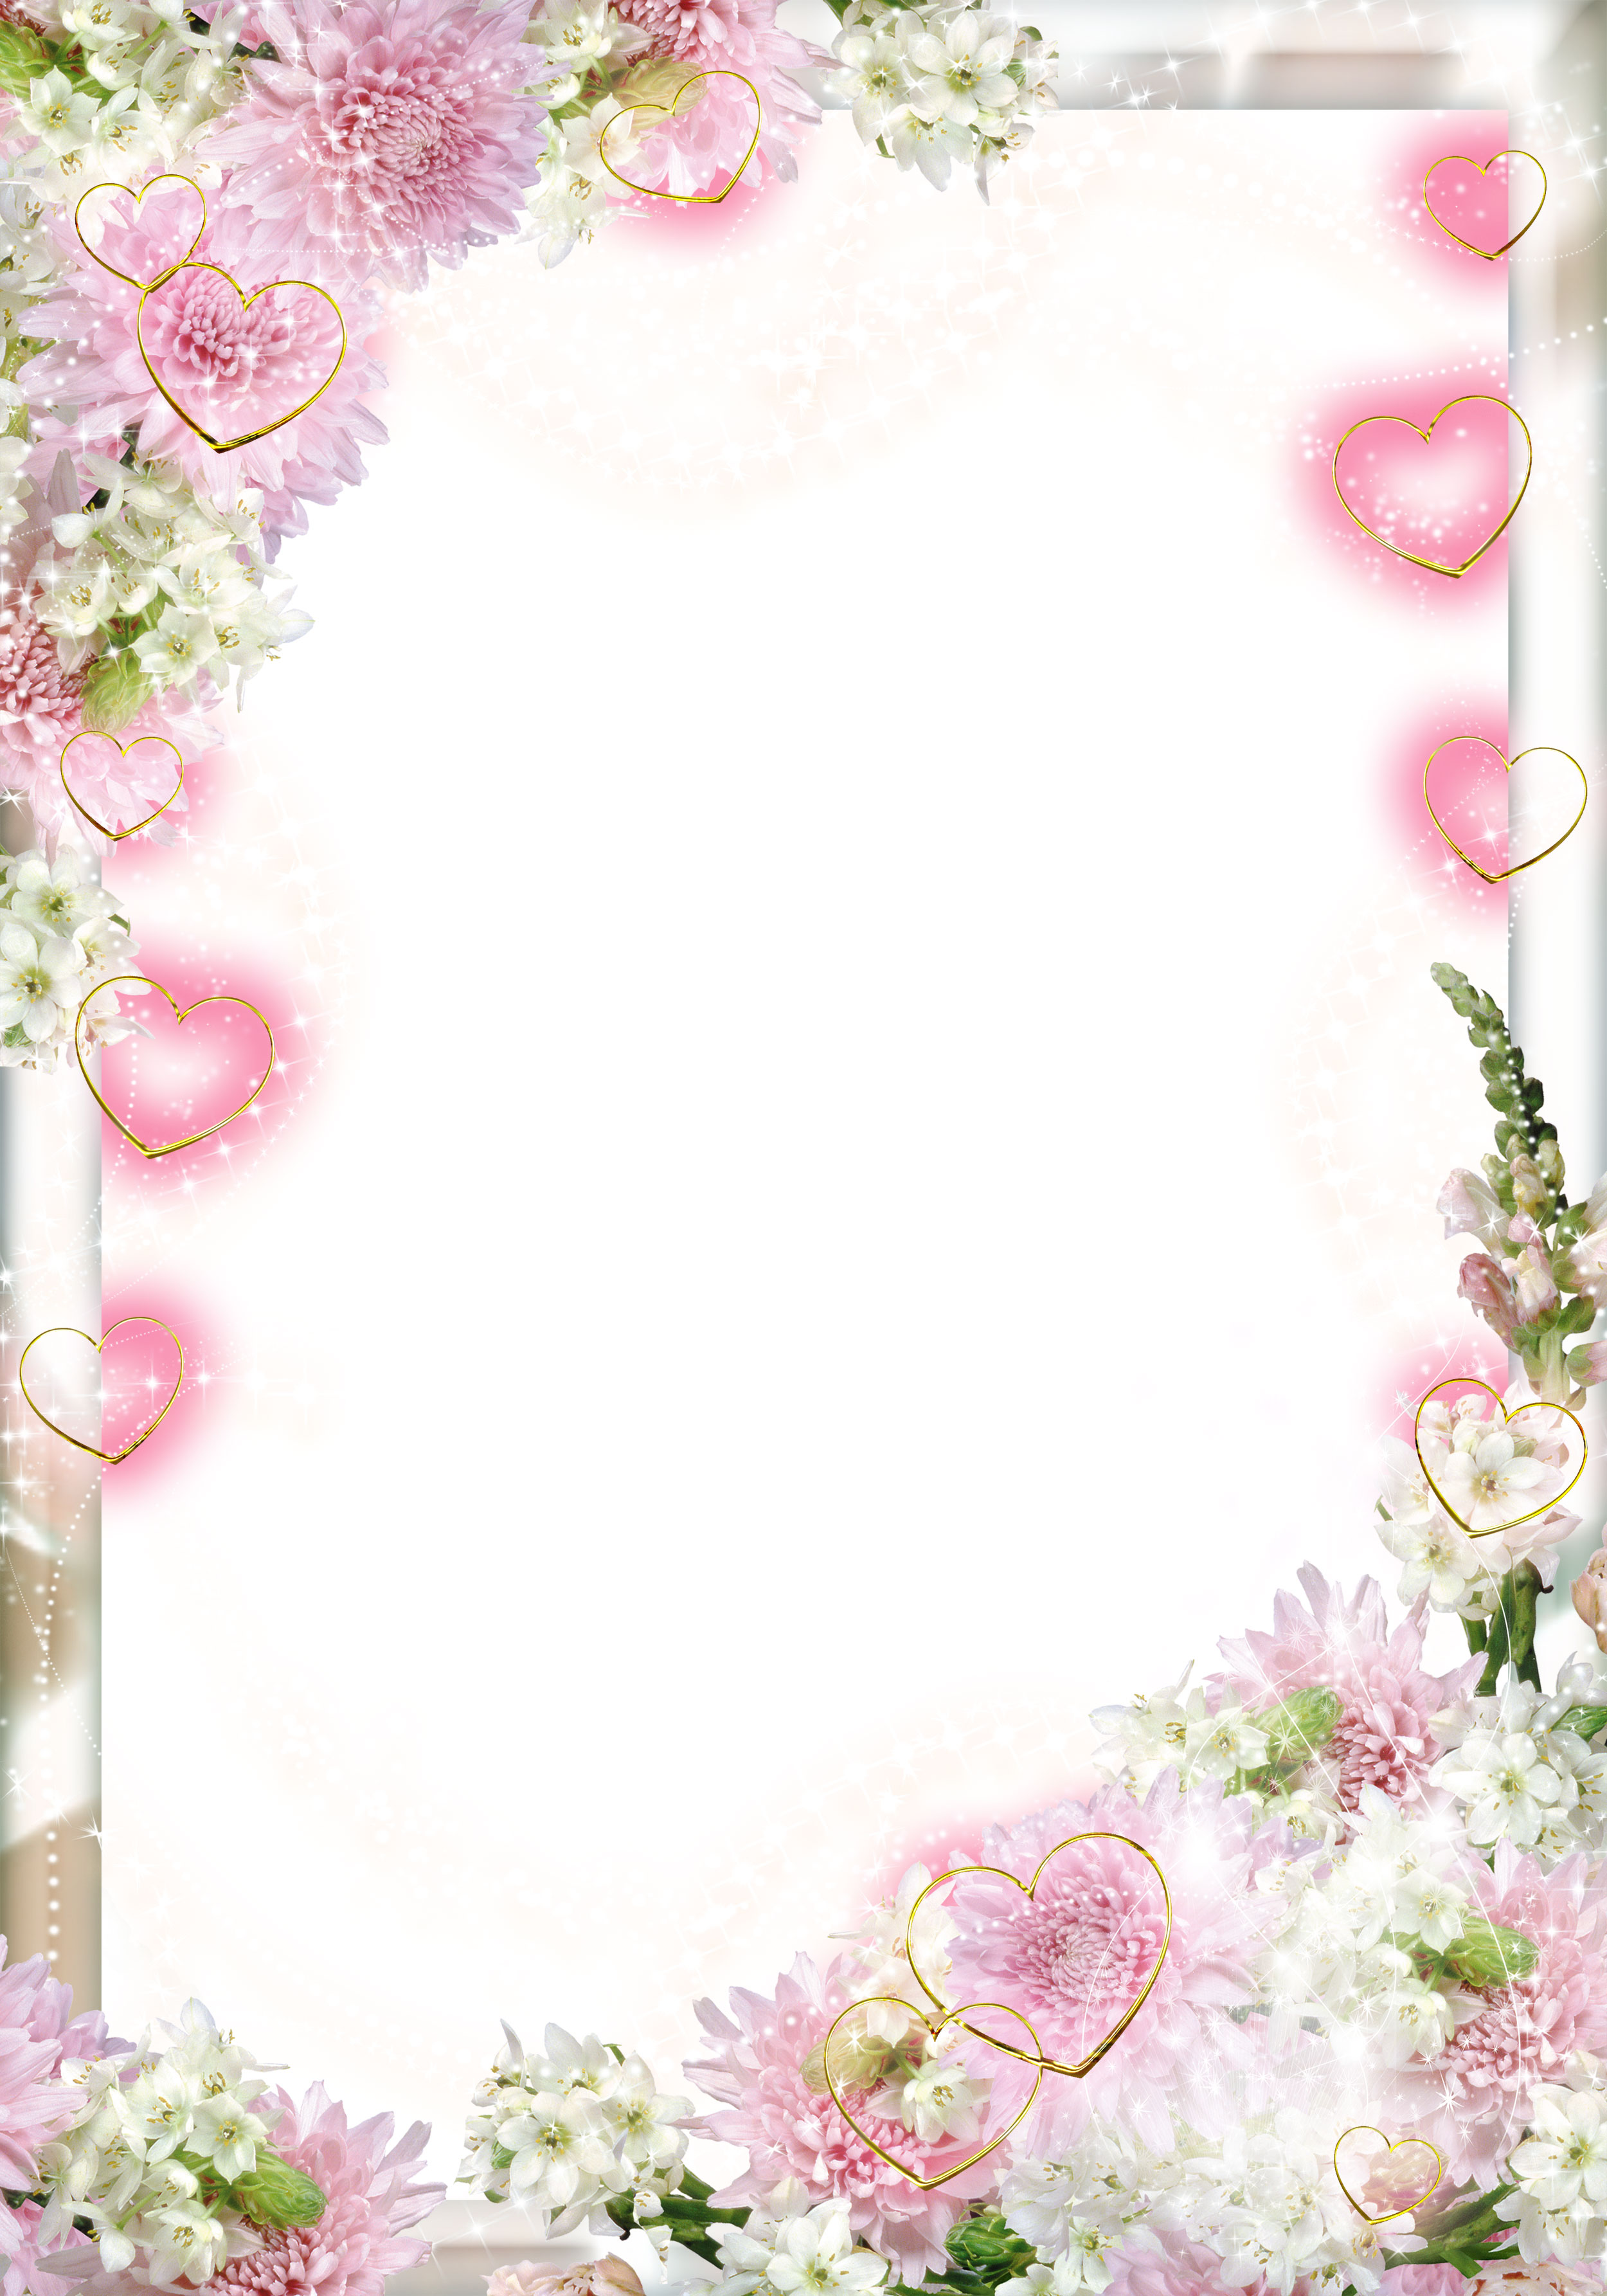 壁紙 背景イラスト 花のフレーム 外枠 No 075 白 ピンク ハート 光彩